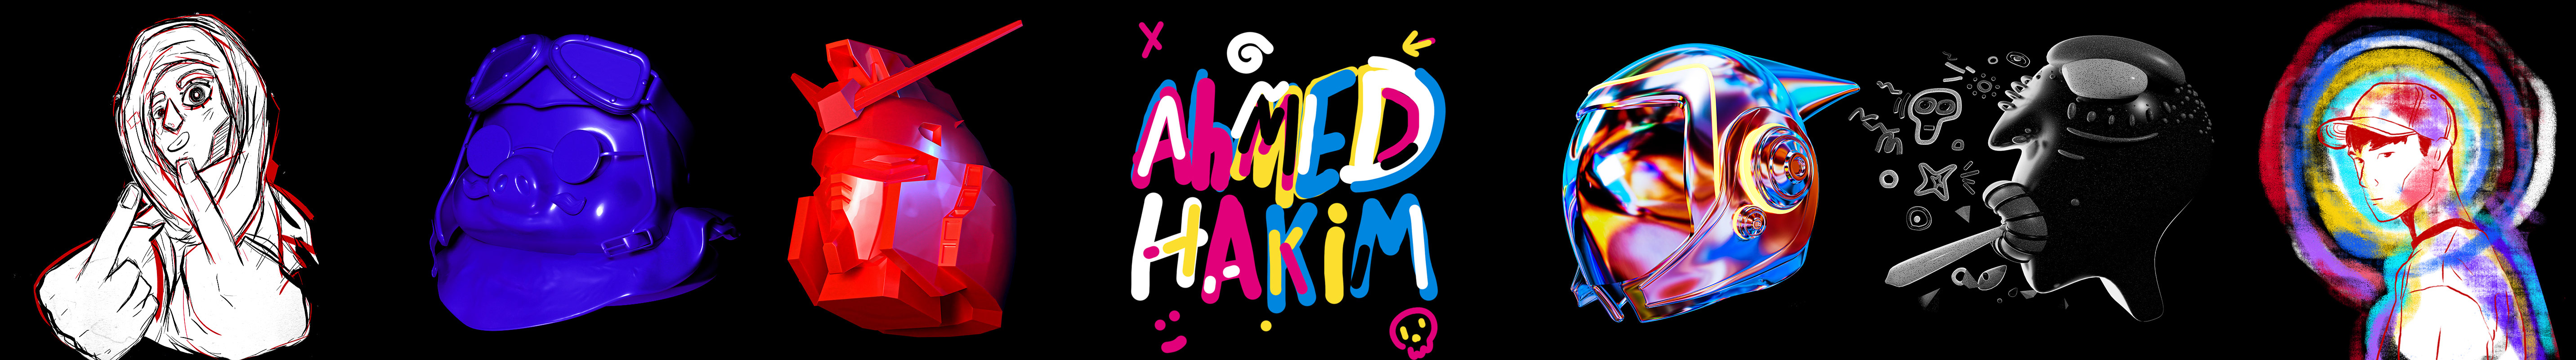 Banner de perfil de Ahmed Hakim